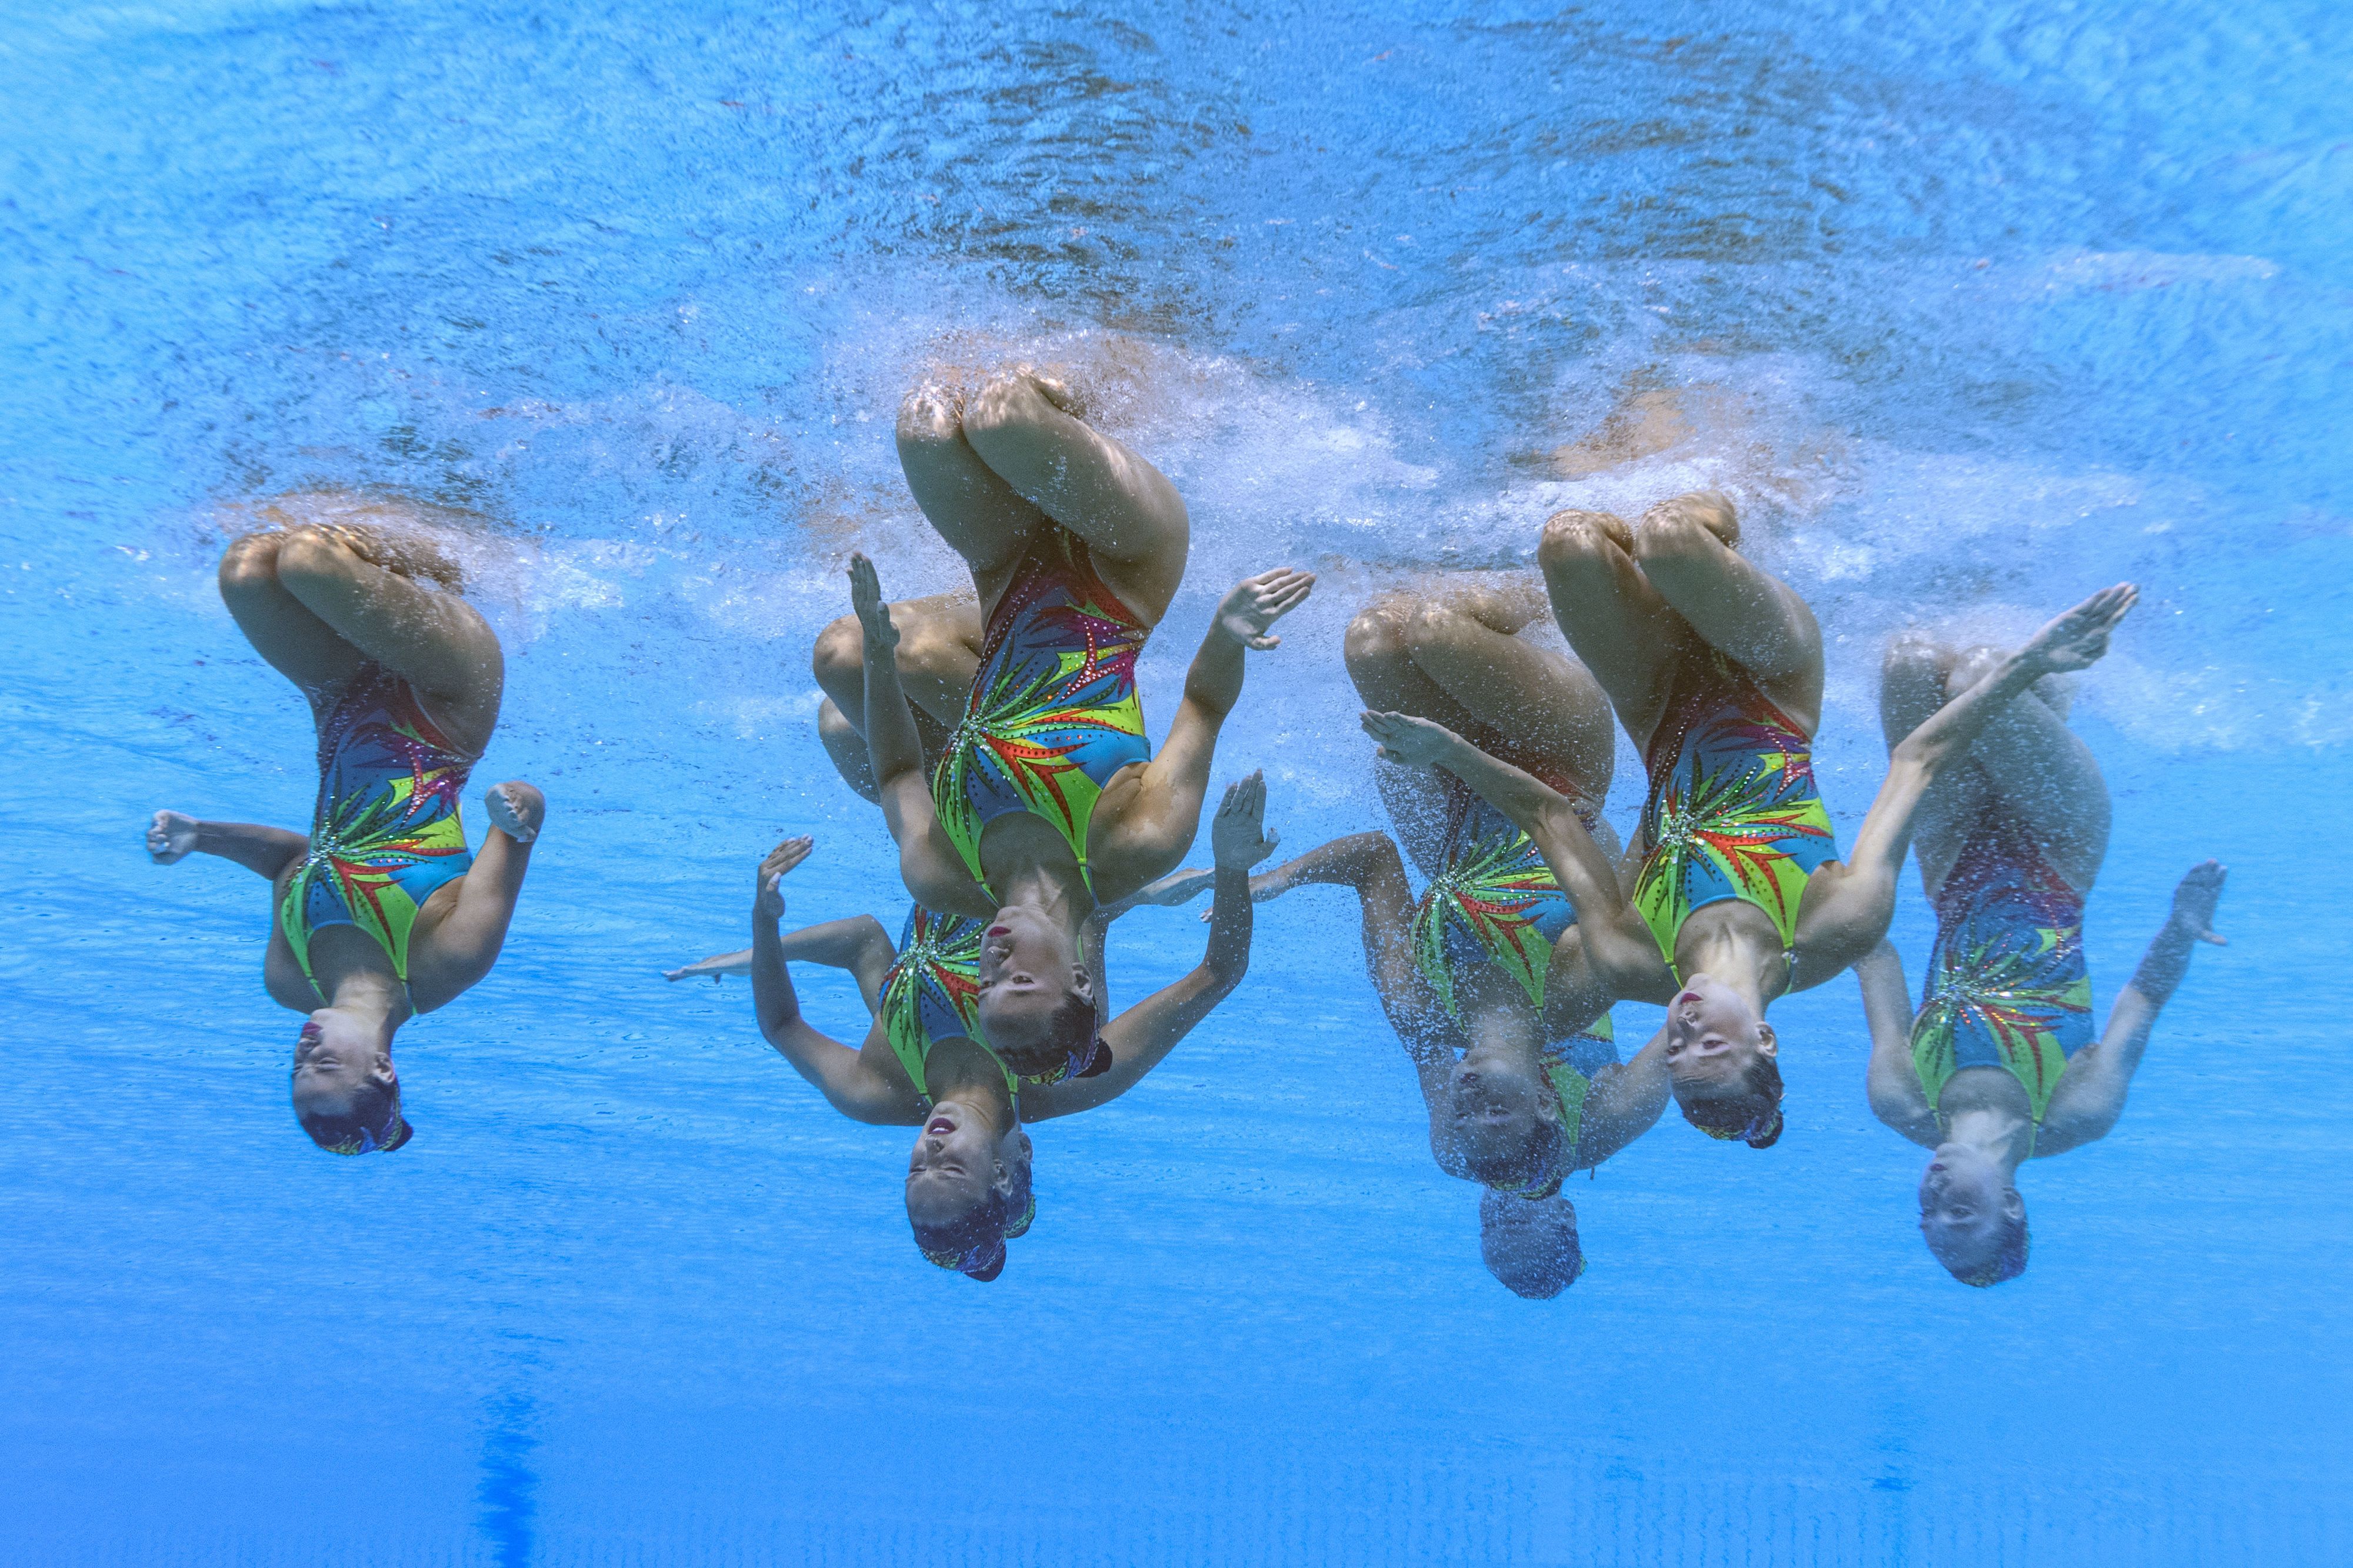 נבחרת ישראל שחייה אומנותית